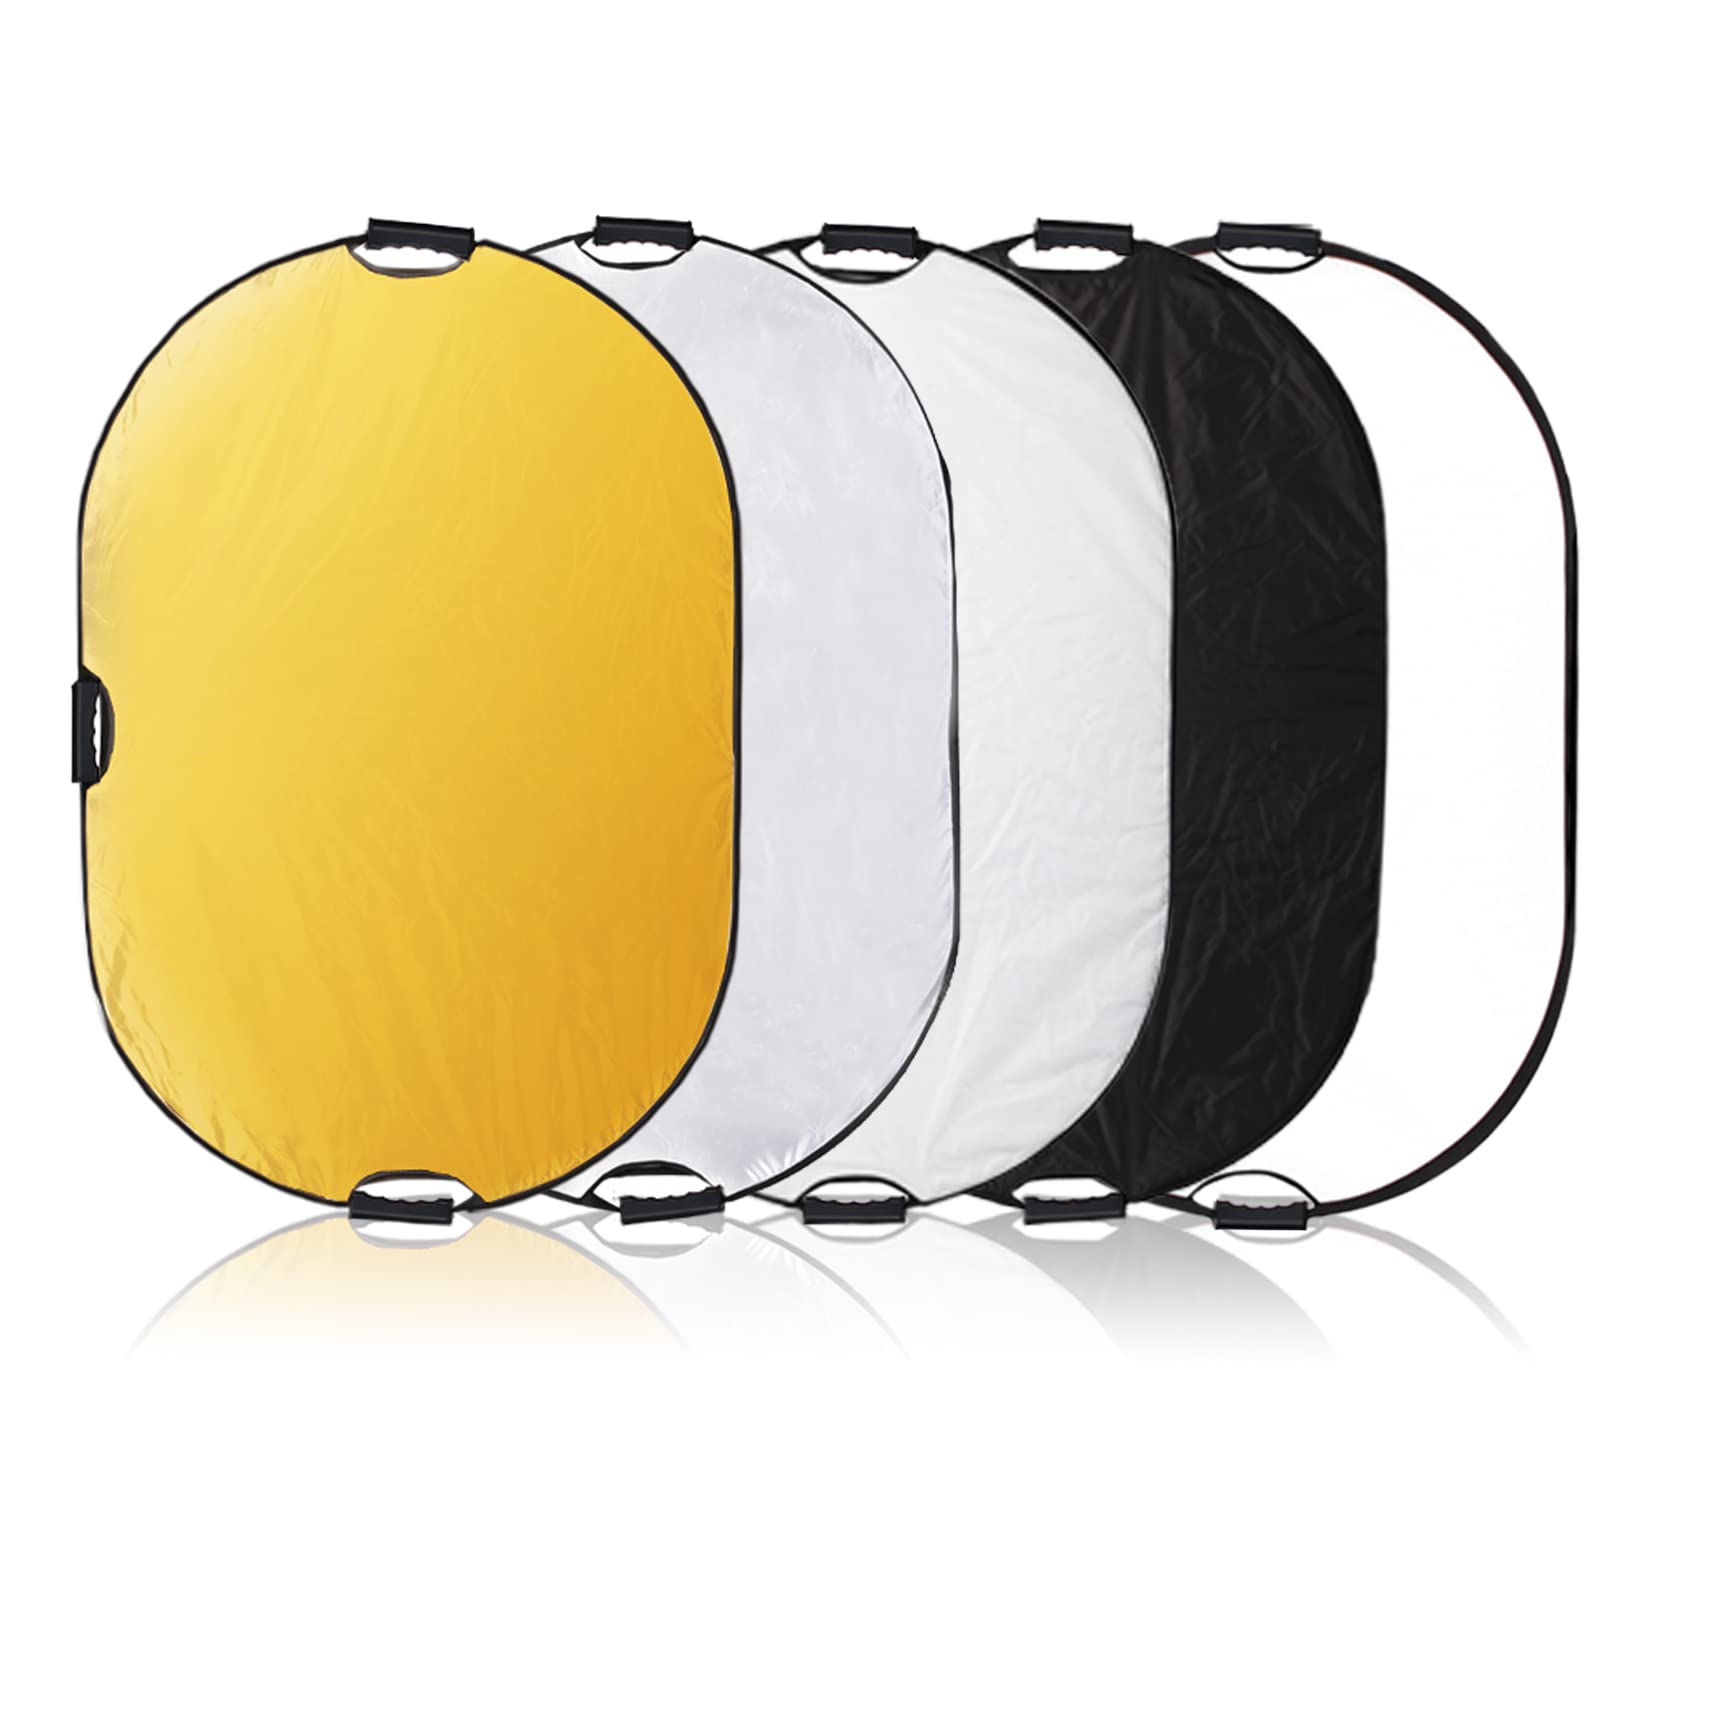 Selens 5-in-1 80x120cm Oval Reflektor Tragbarer Faltbarer für Fotografie Fotostudio Beleuchtung und Außenbeleuchtung Portrait Fotografie